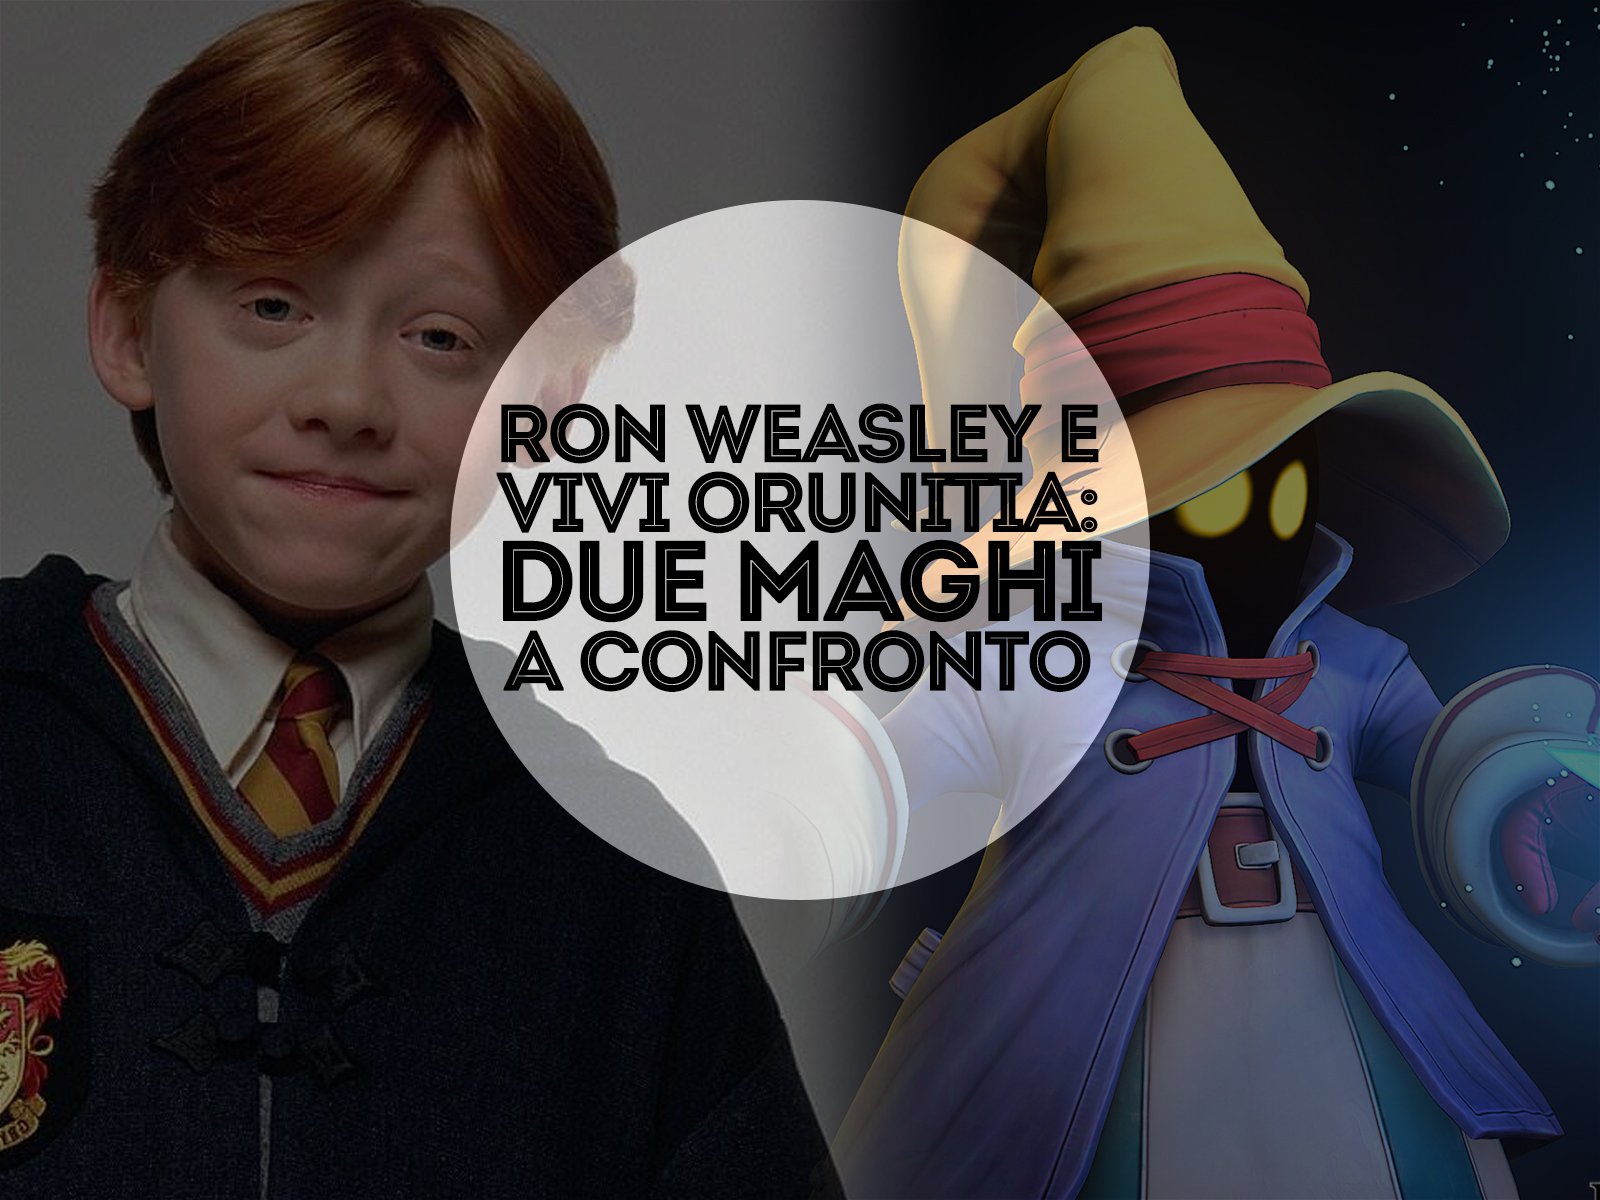 Ron Weasley e Vivi Orunitia: due maghi a confronto